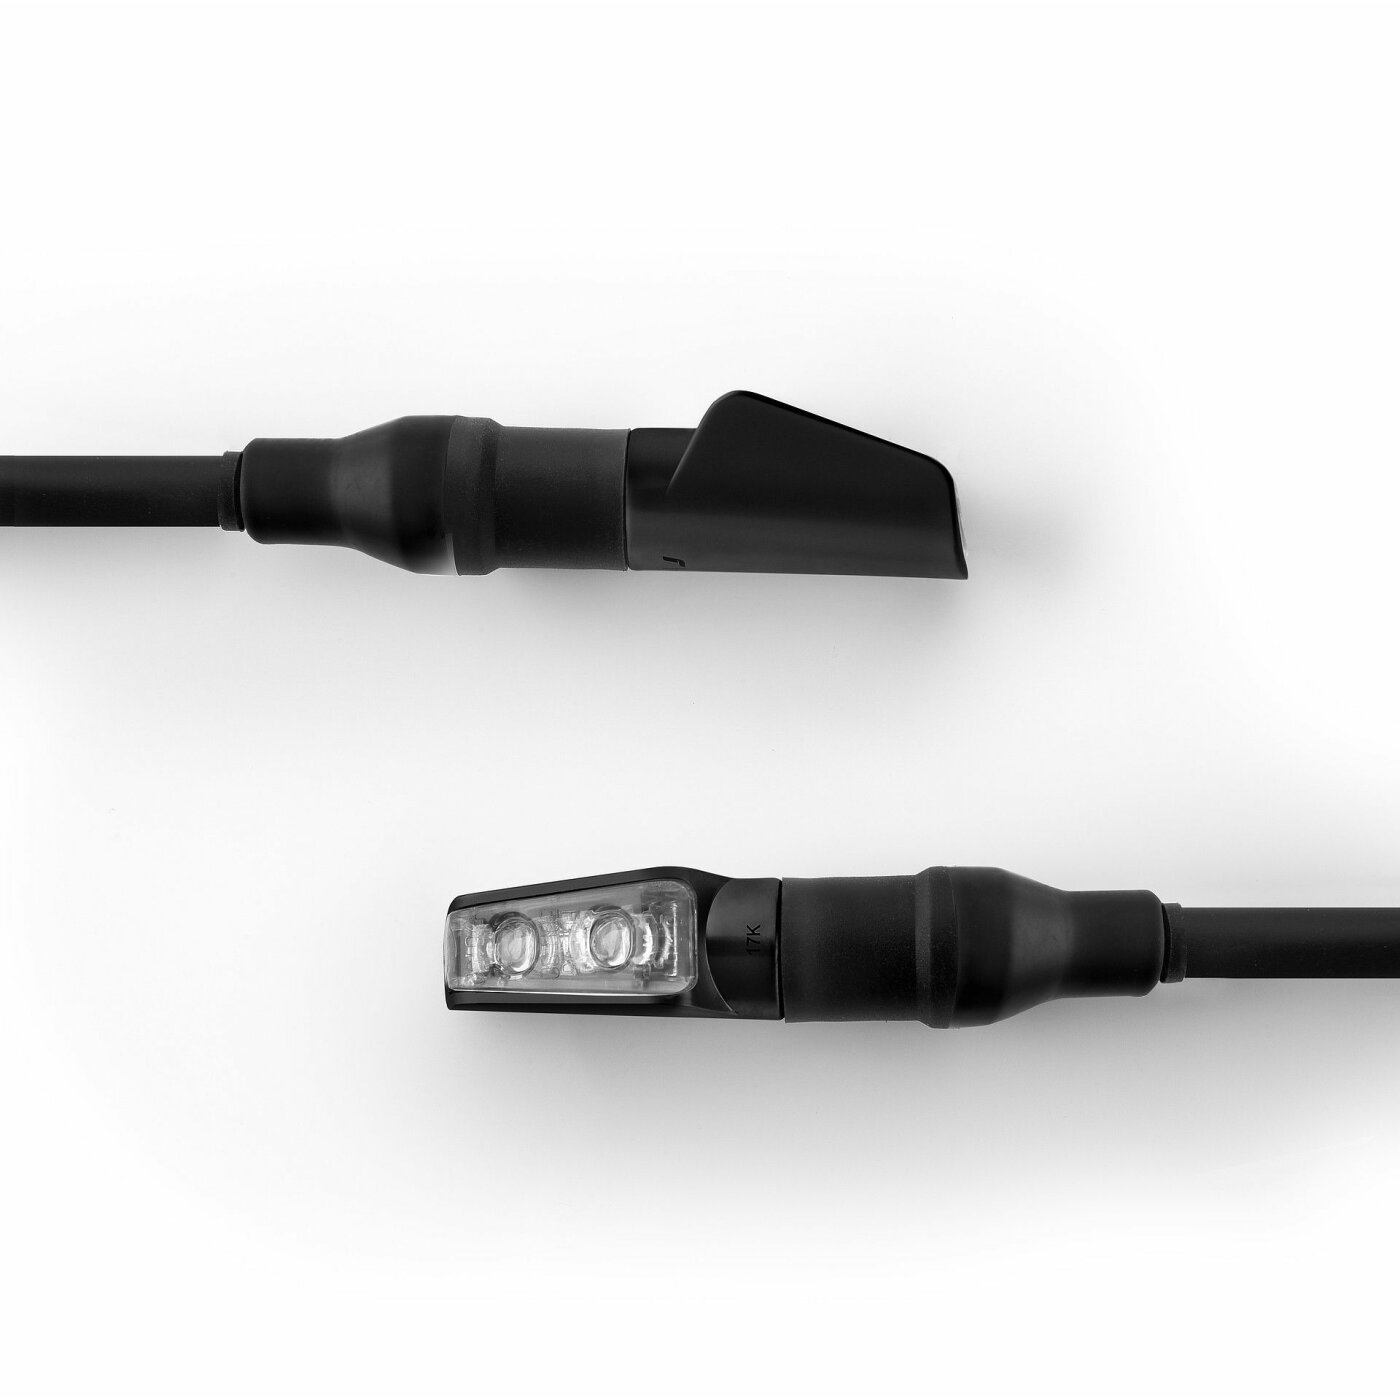 LED-Micro Blinker/Rücklicht-Einheit, 'Spark', Kunststoffgehäuse Abm. nur  ca. 25x11x14.5mm, getöntes Glas, e-geprüft, für vorn & hinten,  gummigelagert, 1 Paar